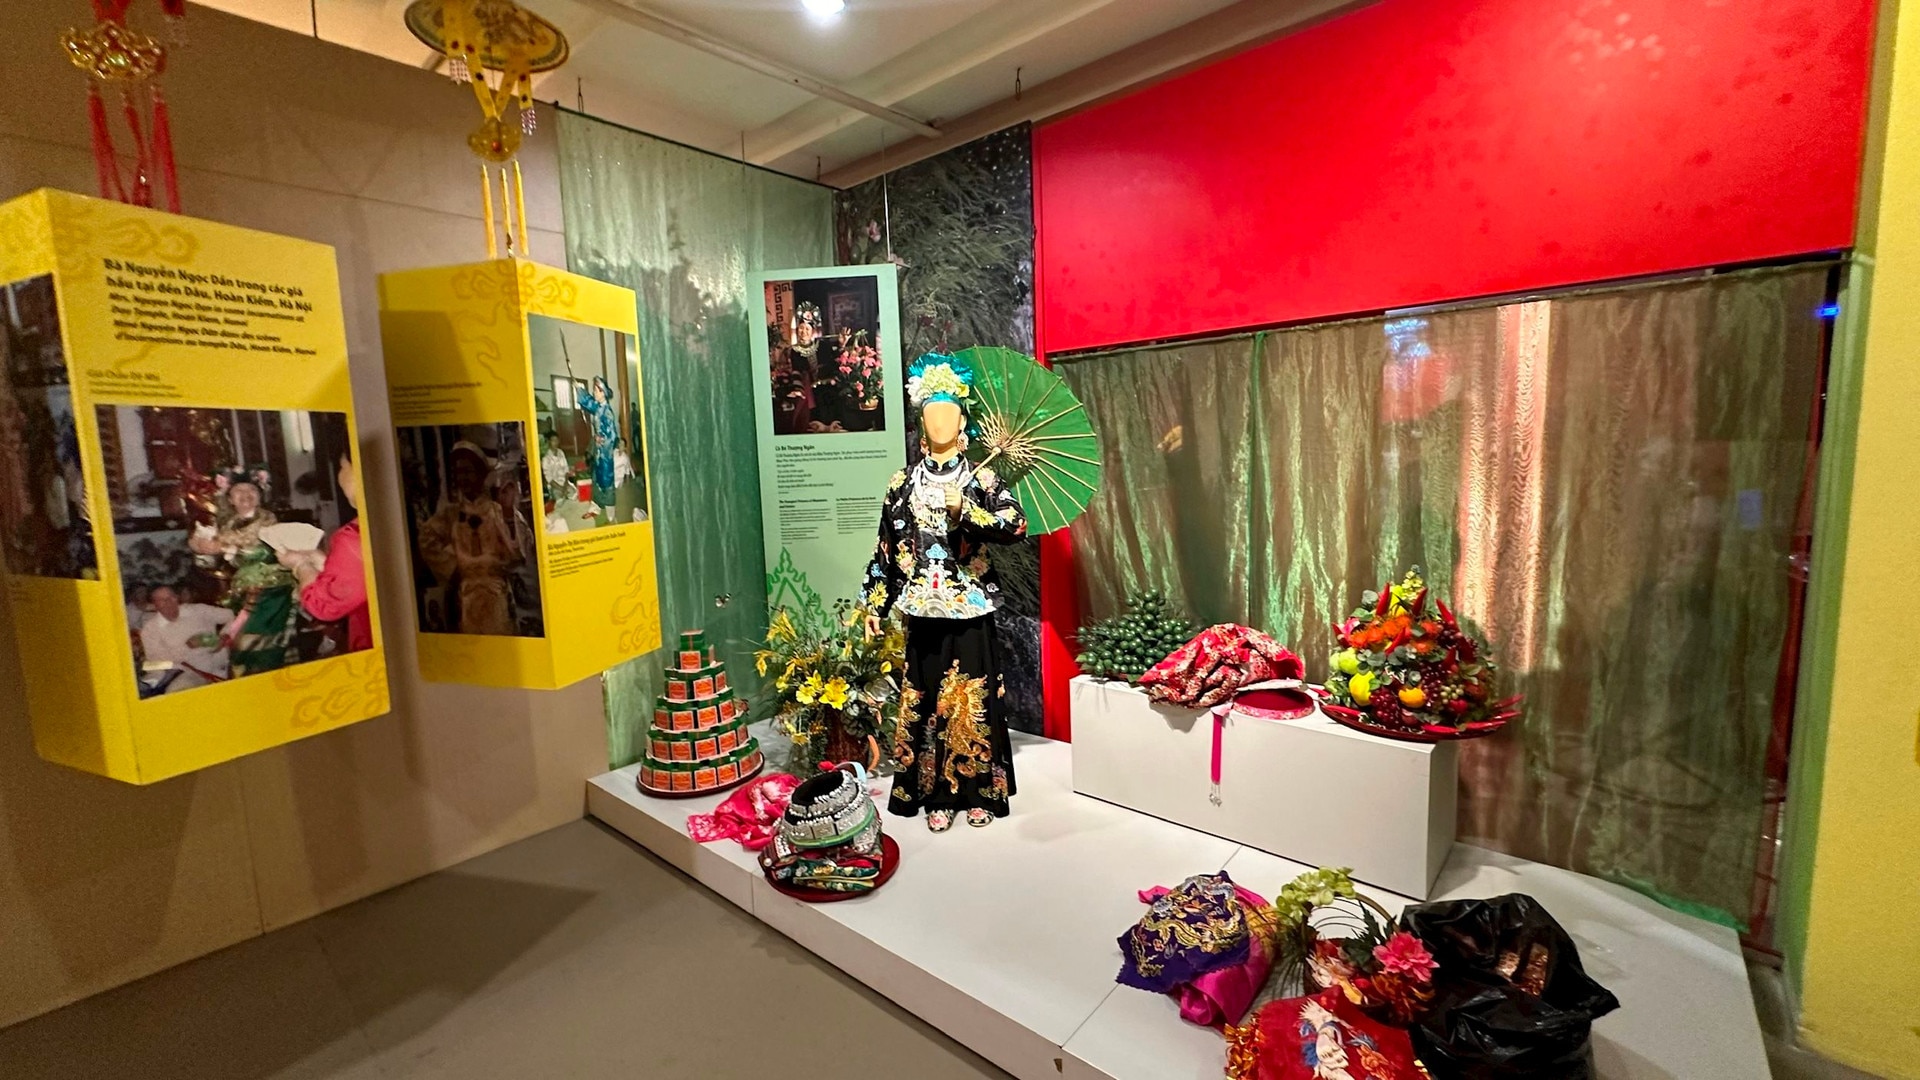 Trải nghiệm văn hóa Tín ngưỡng thờ Mẫu tại Bảo tàng Phụ nữ Việt Nam - Ảnh 2.